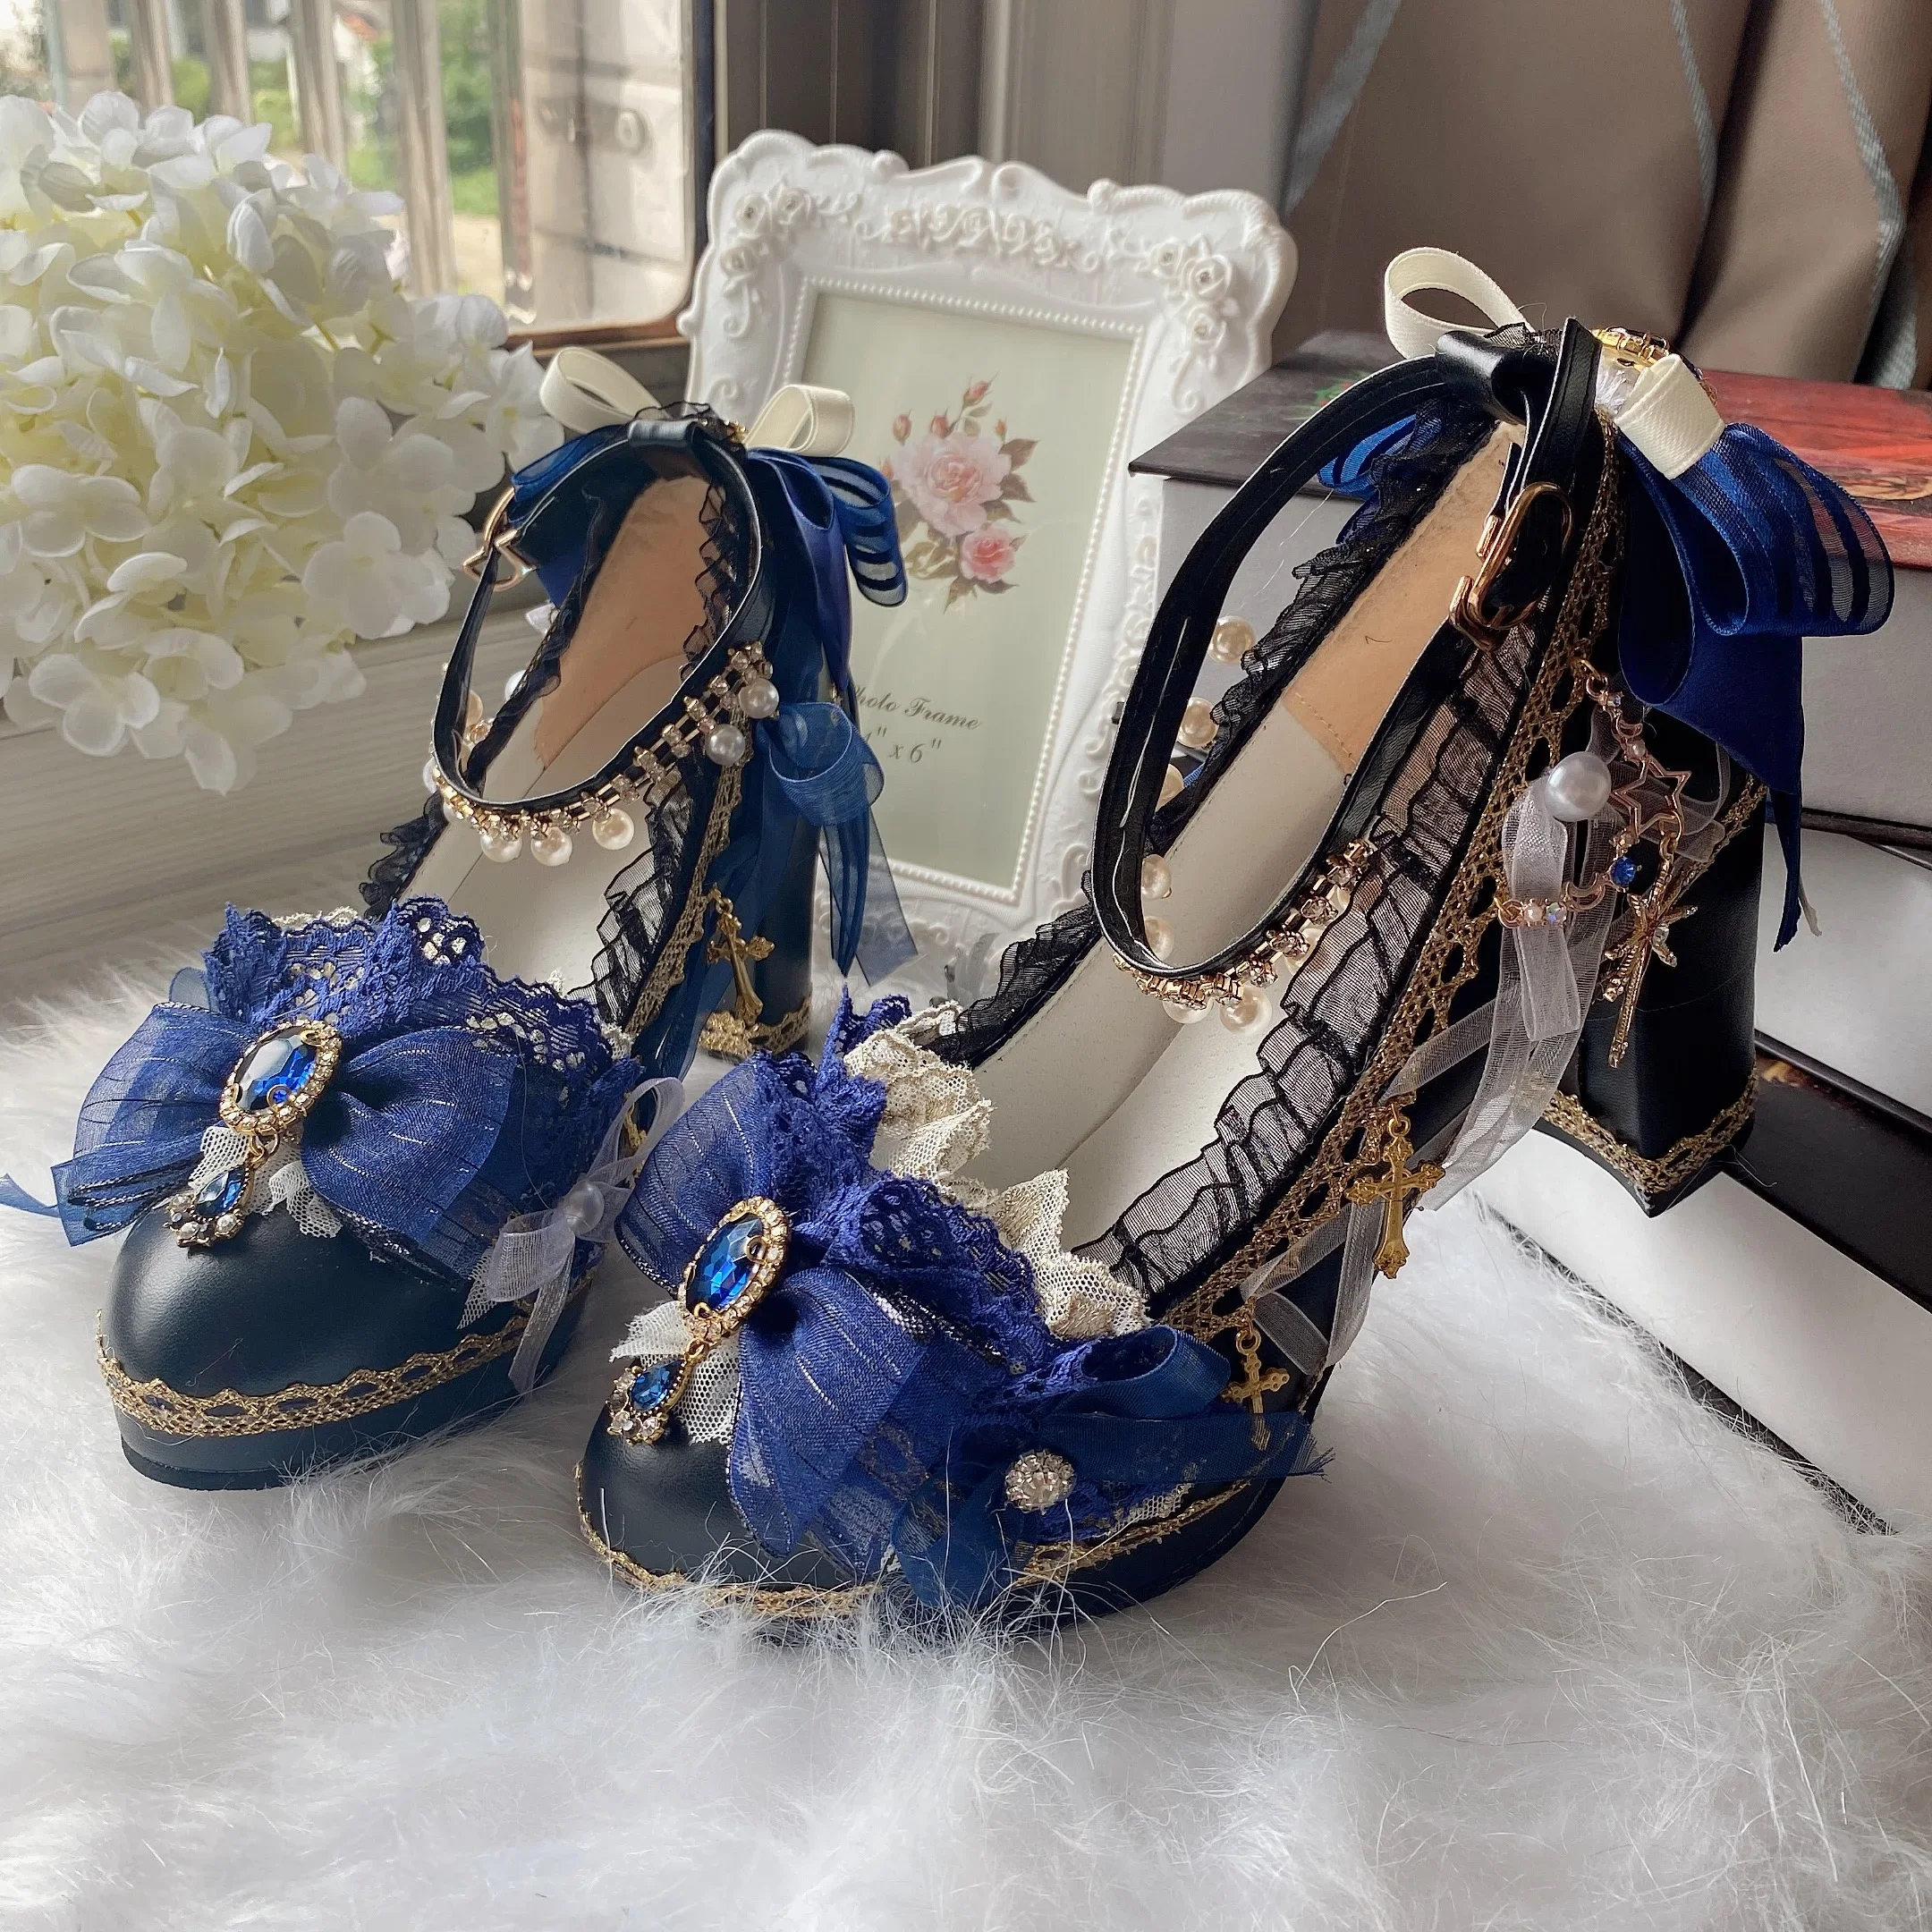 

Свадебные туфли ручной работы в стиле "Лолита" с цветами, Искусственные черные туфли на толстом высоком каблуке 6 см, винтажные японские Роскошные готические туфли